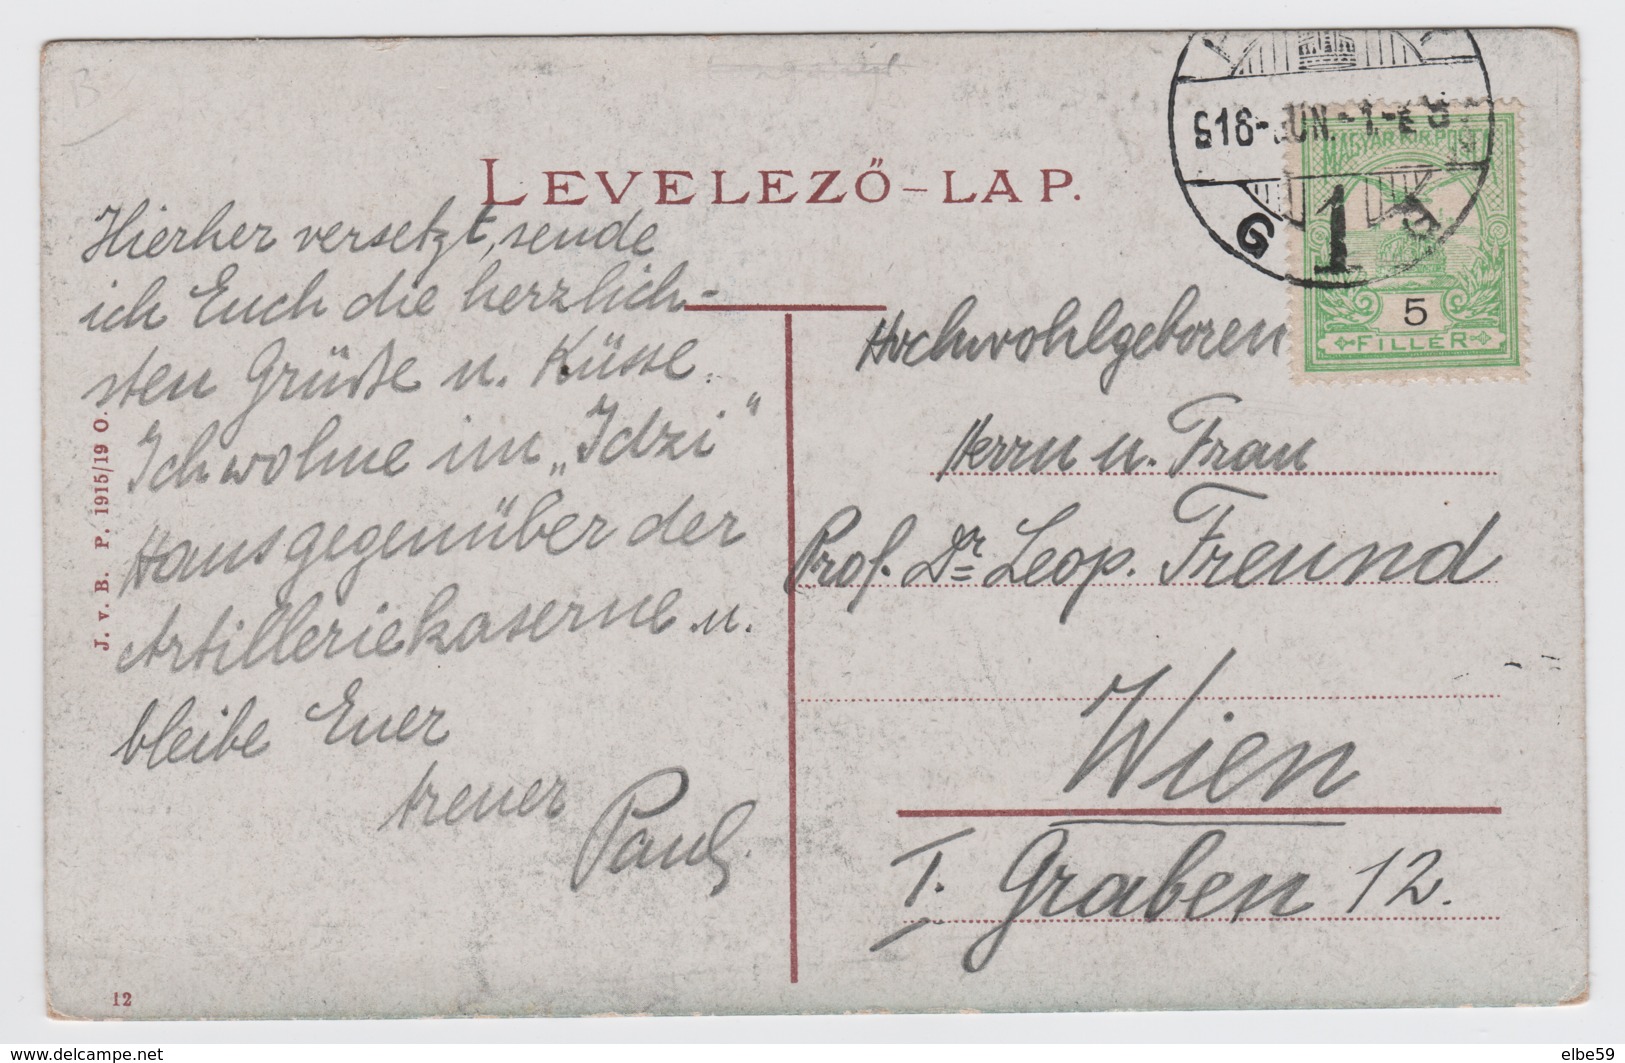 Slovaquie, Bratislava (Pozsony, Pressburg), Chateau, écrite ,timbre - Slovacchia